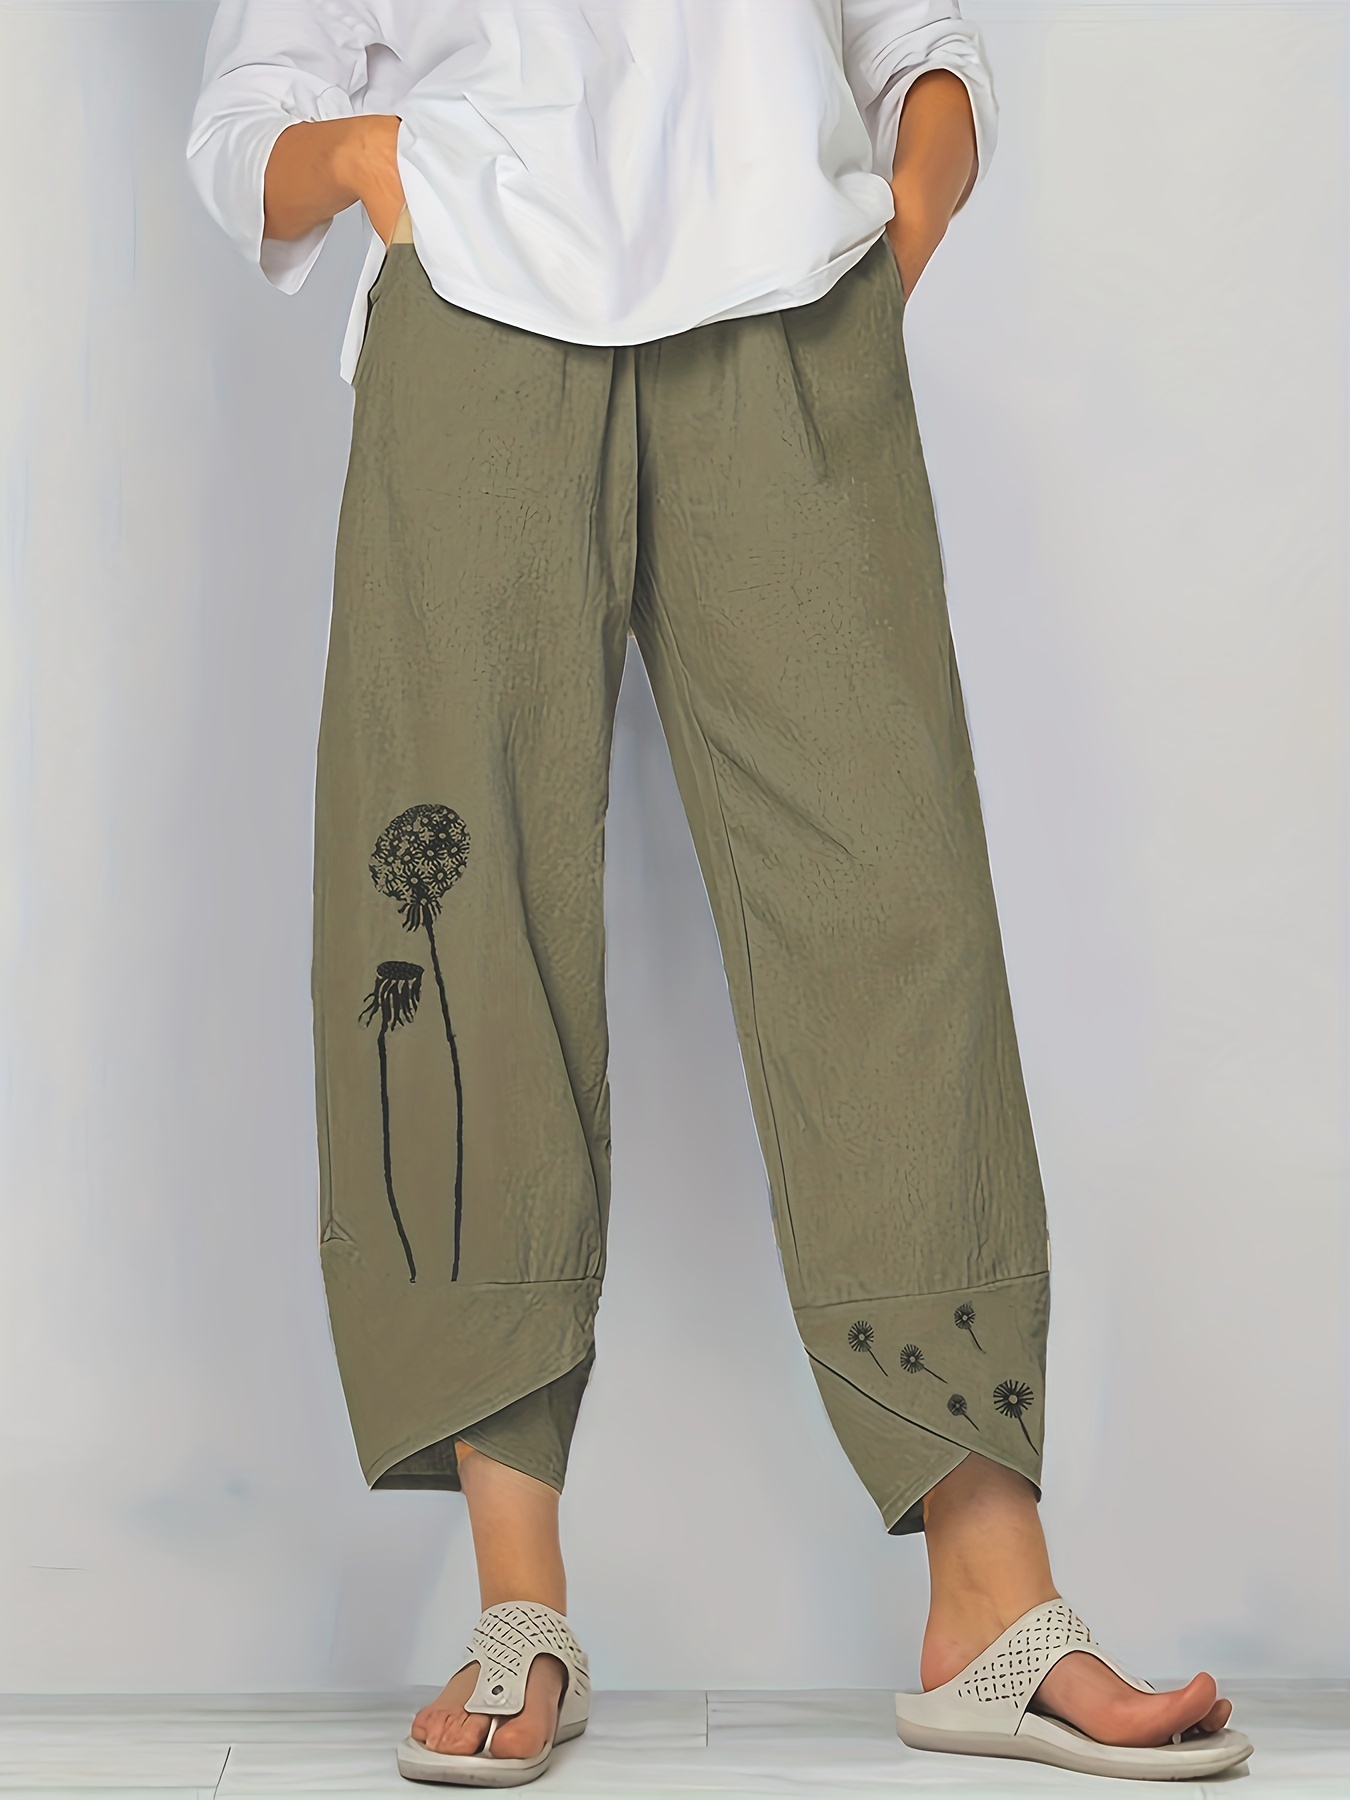 Summer Women's Pants Cotton Linen Large Size Casual Loose Ankle-length  Capri Pants Drawstring Harem Pants Women's W…